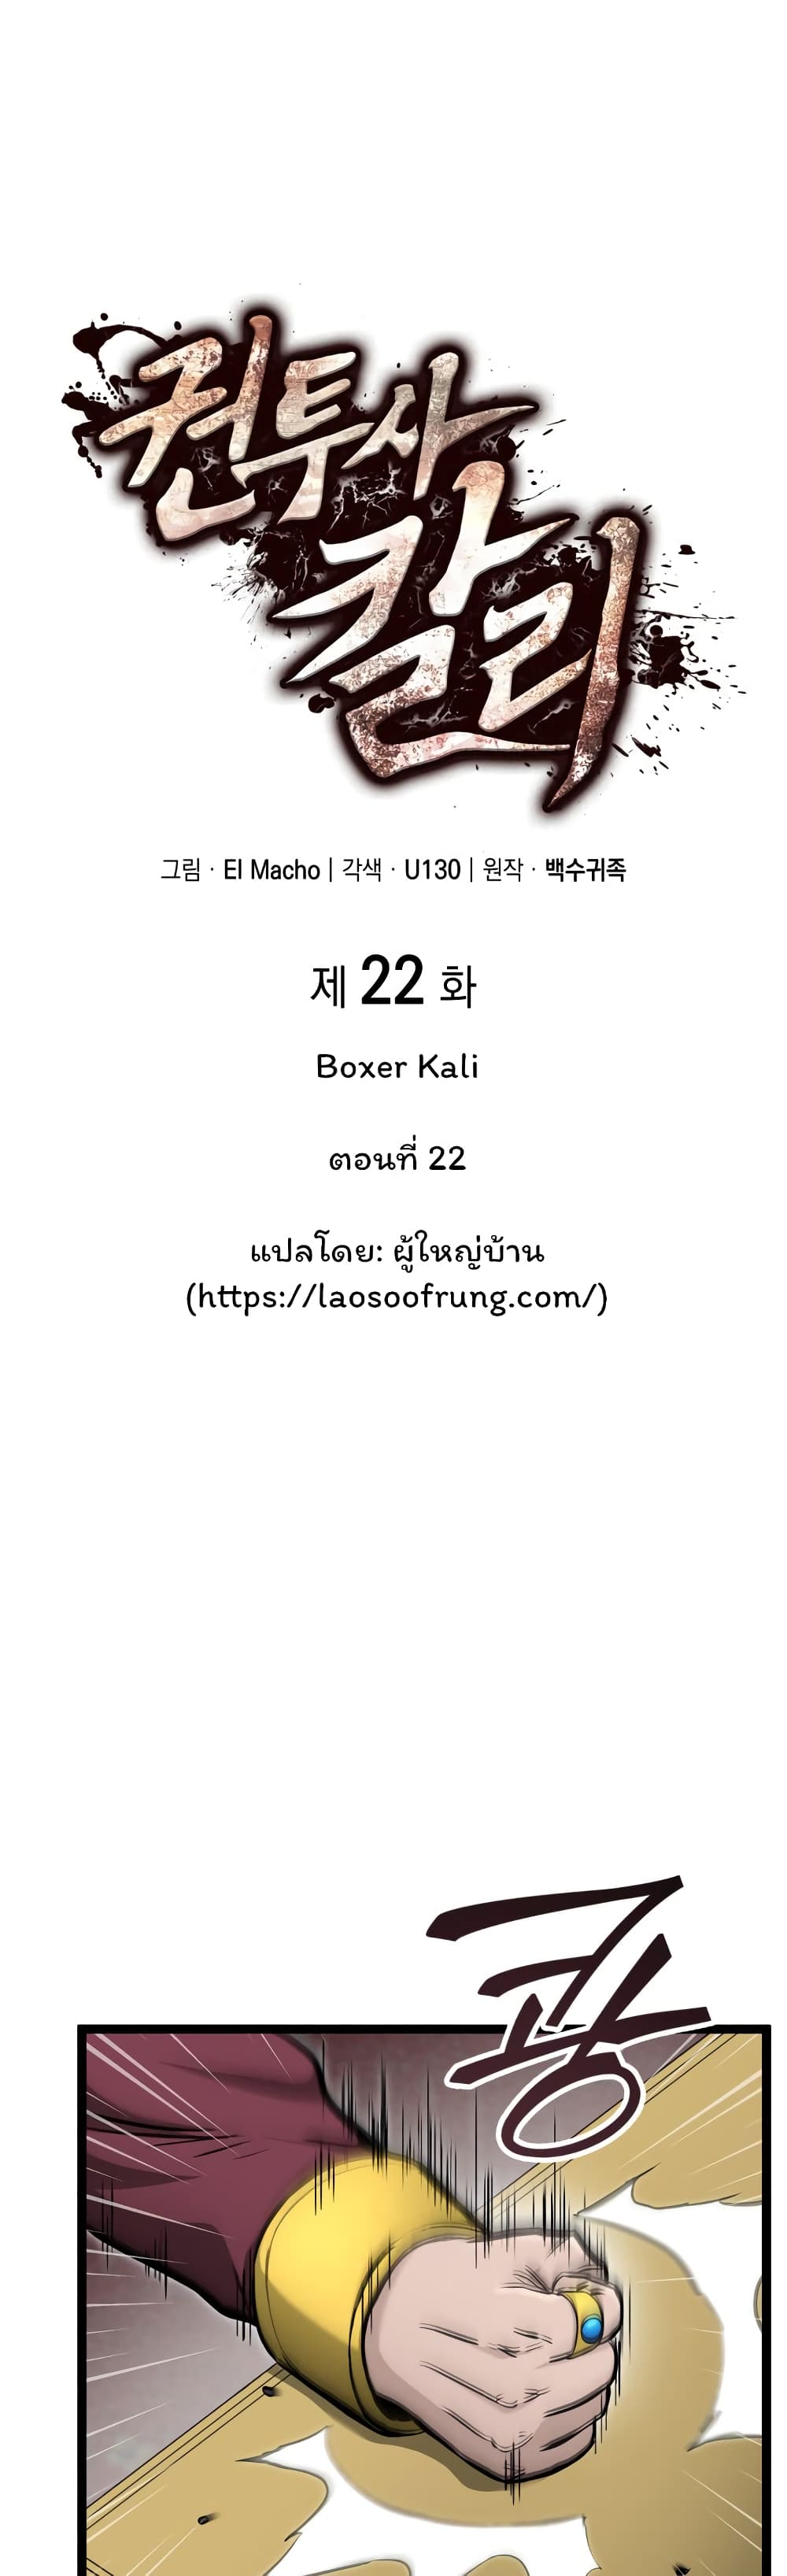 Boxer Kali 22-22